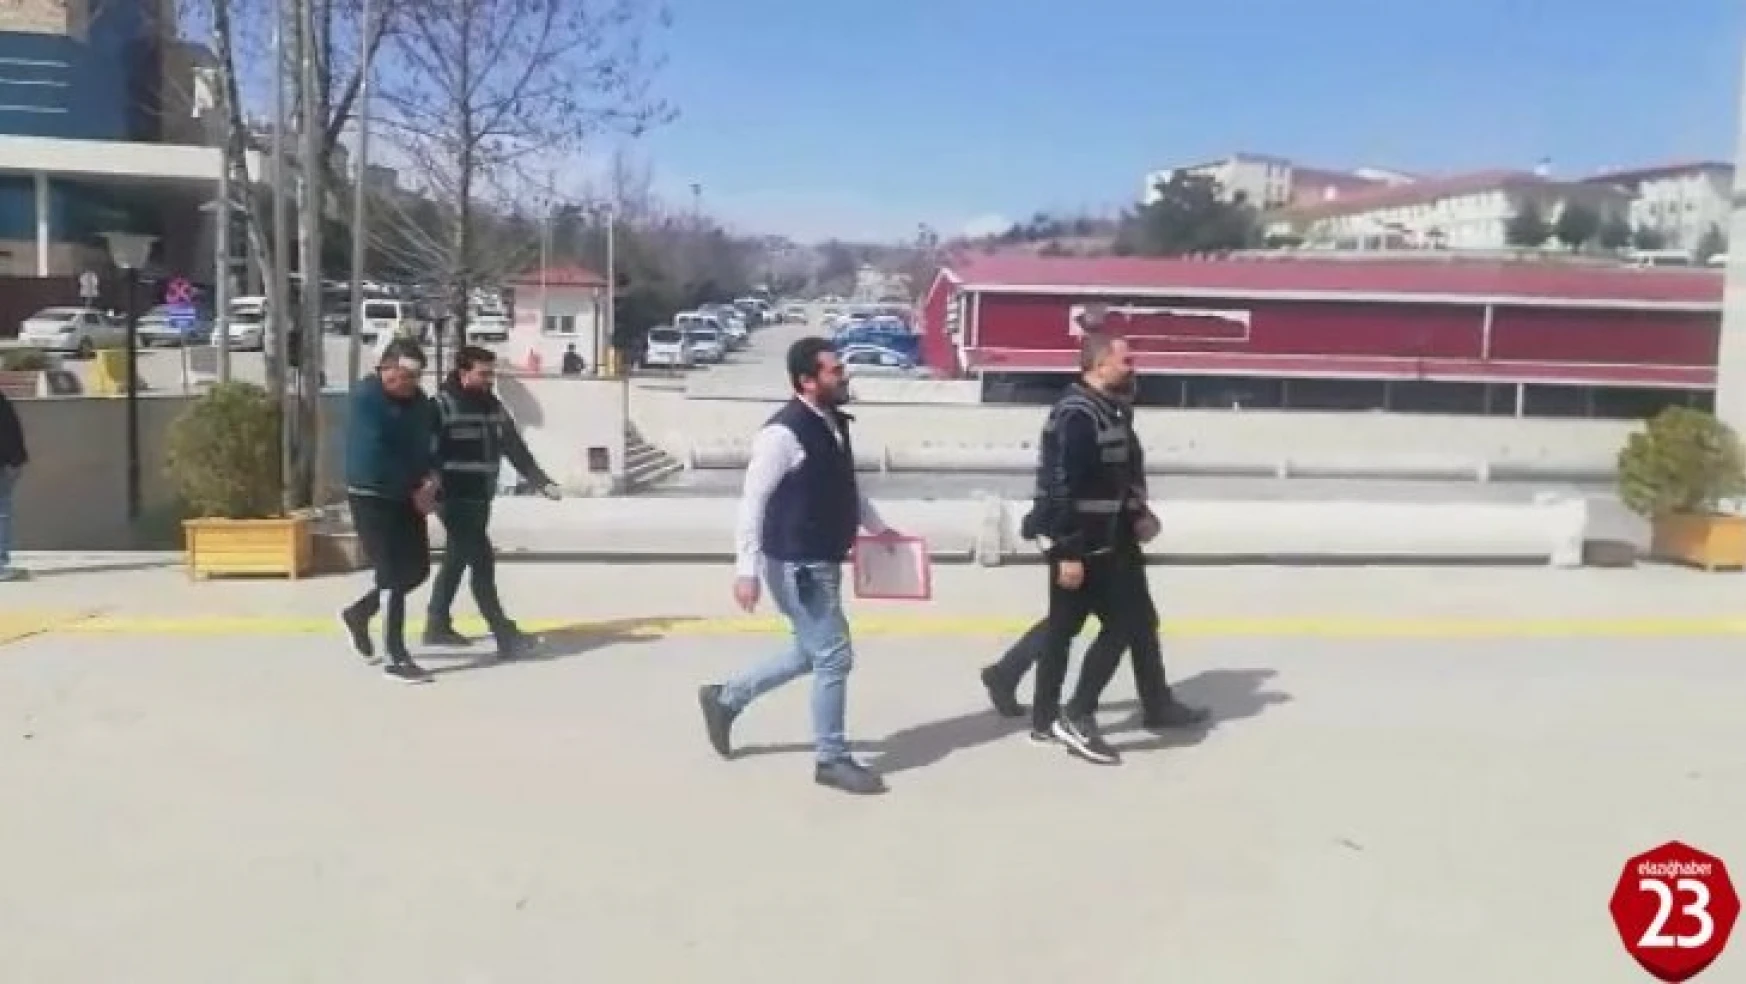 Elazığ'da 3 kişinin yaralandığı olayda mahkemeye sevk edilen 2 şüpheli tutuklandı